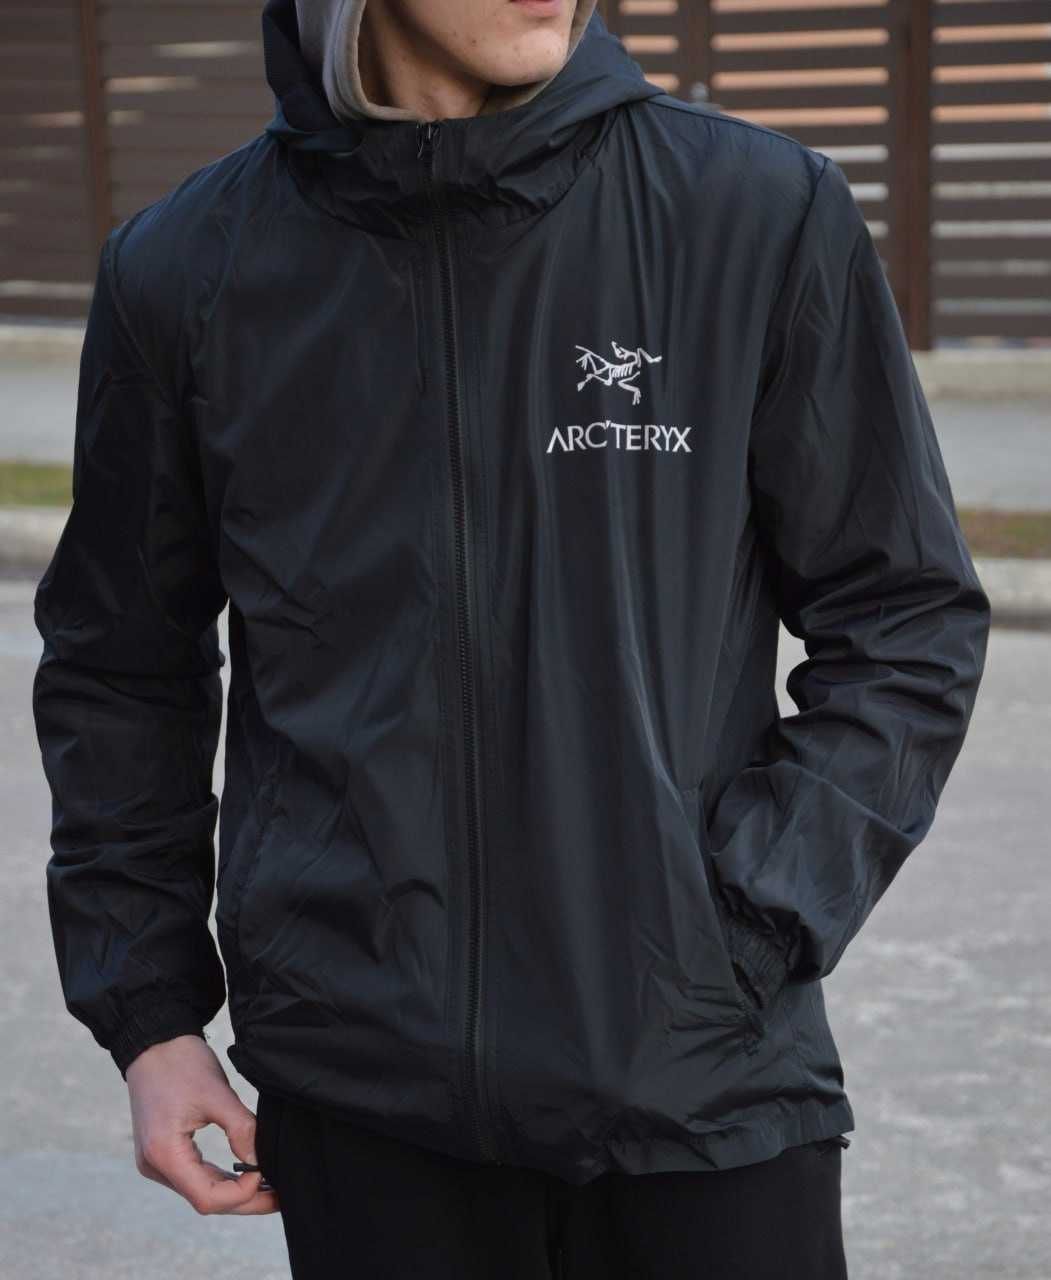 Мужская куртка витровка Артерикс / Arcteryx Gore-Tex черная винтажная